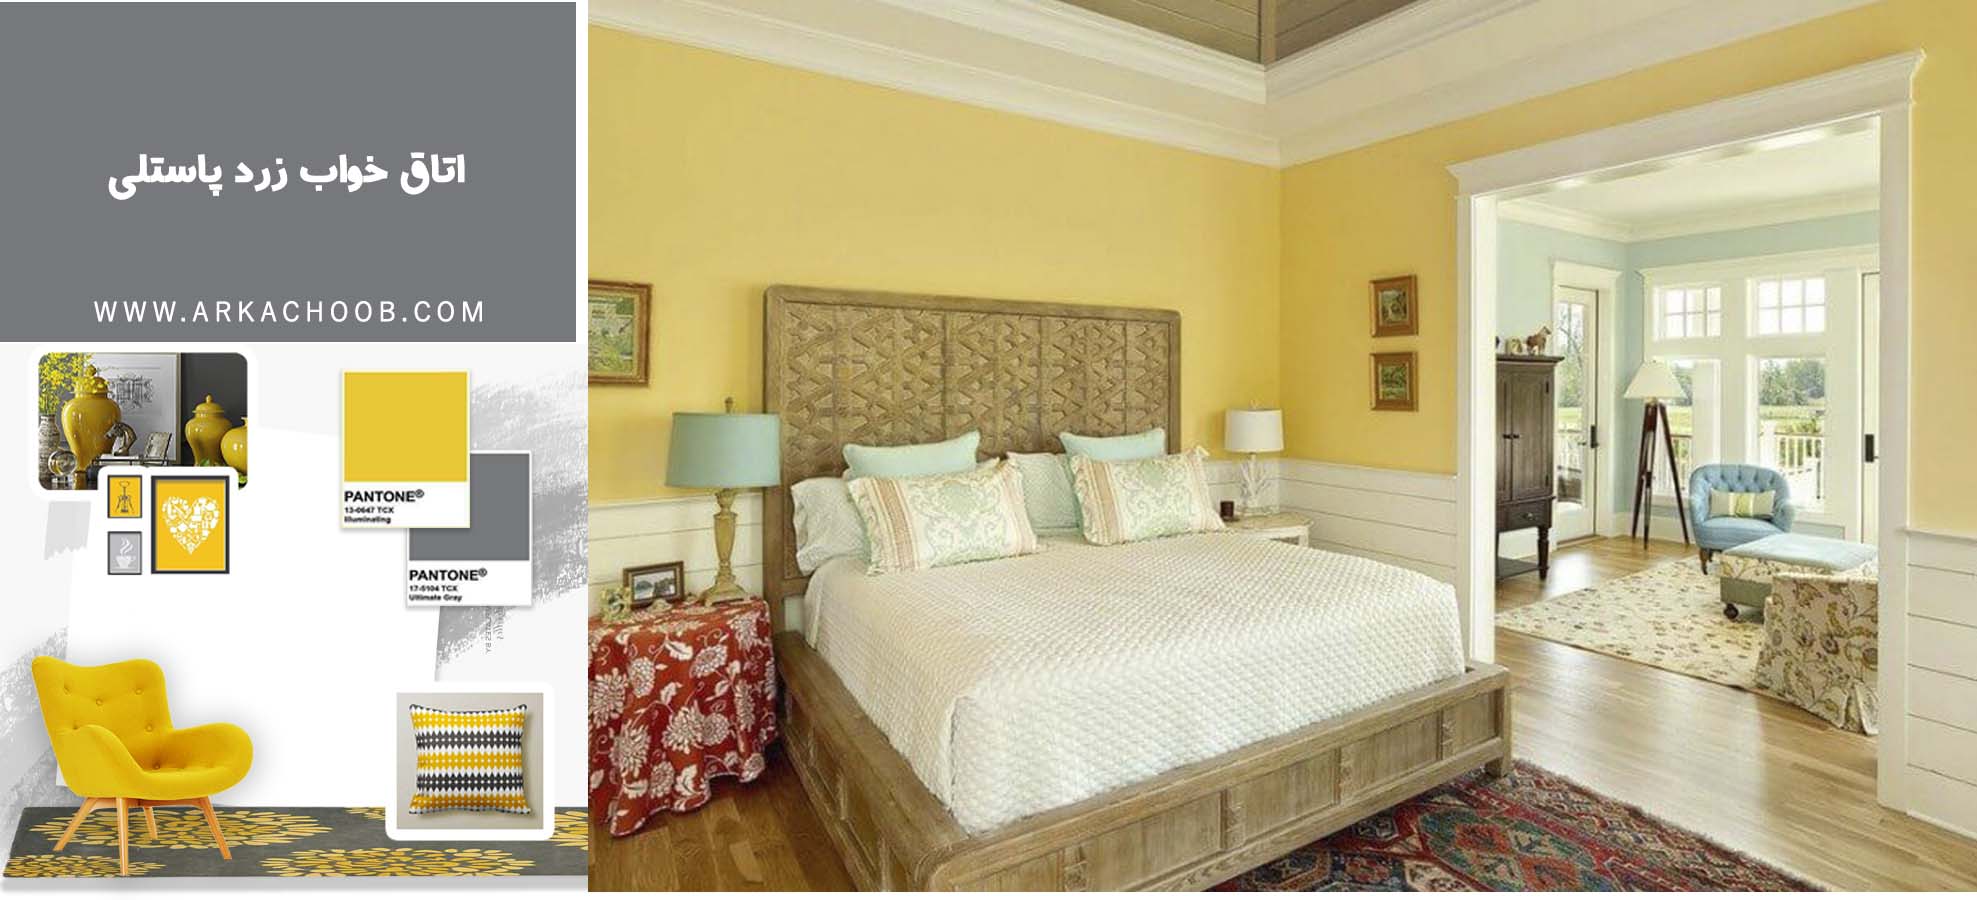 اتاق خواب زرد پاستلی - استفاده از رنگ زرد در اتاق خواب